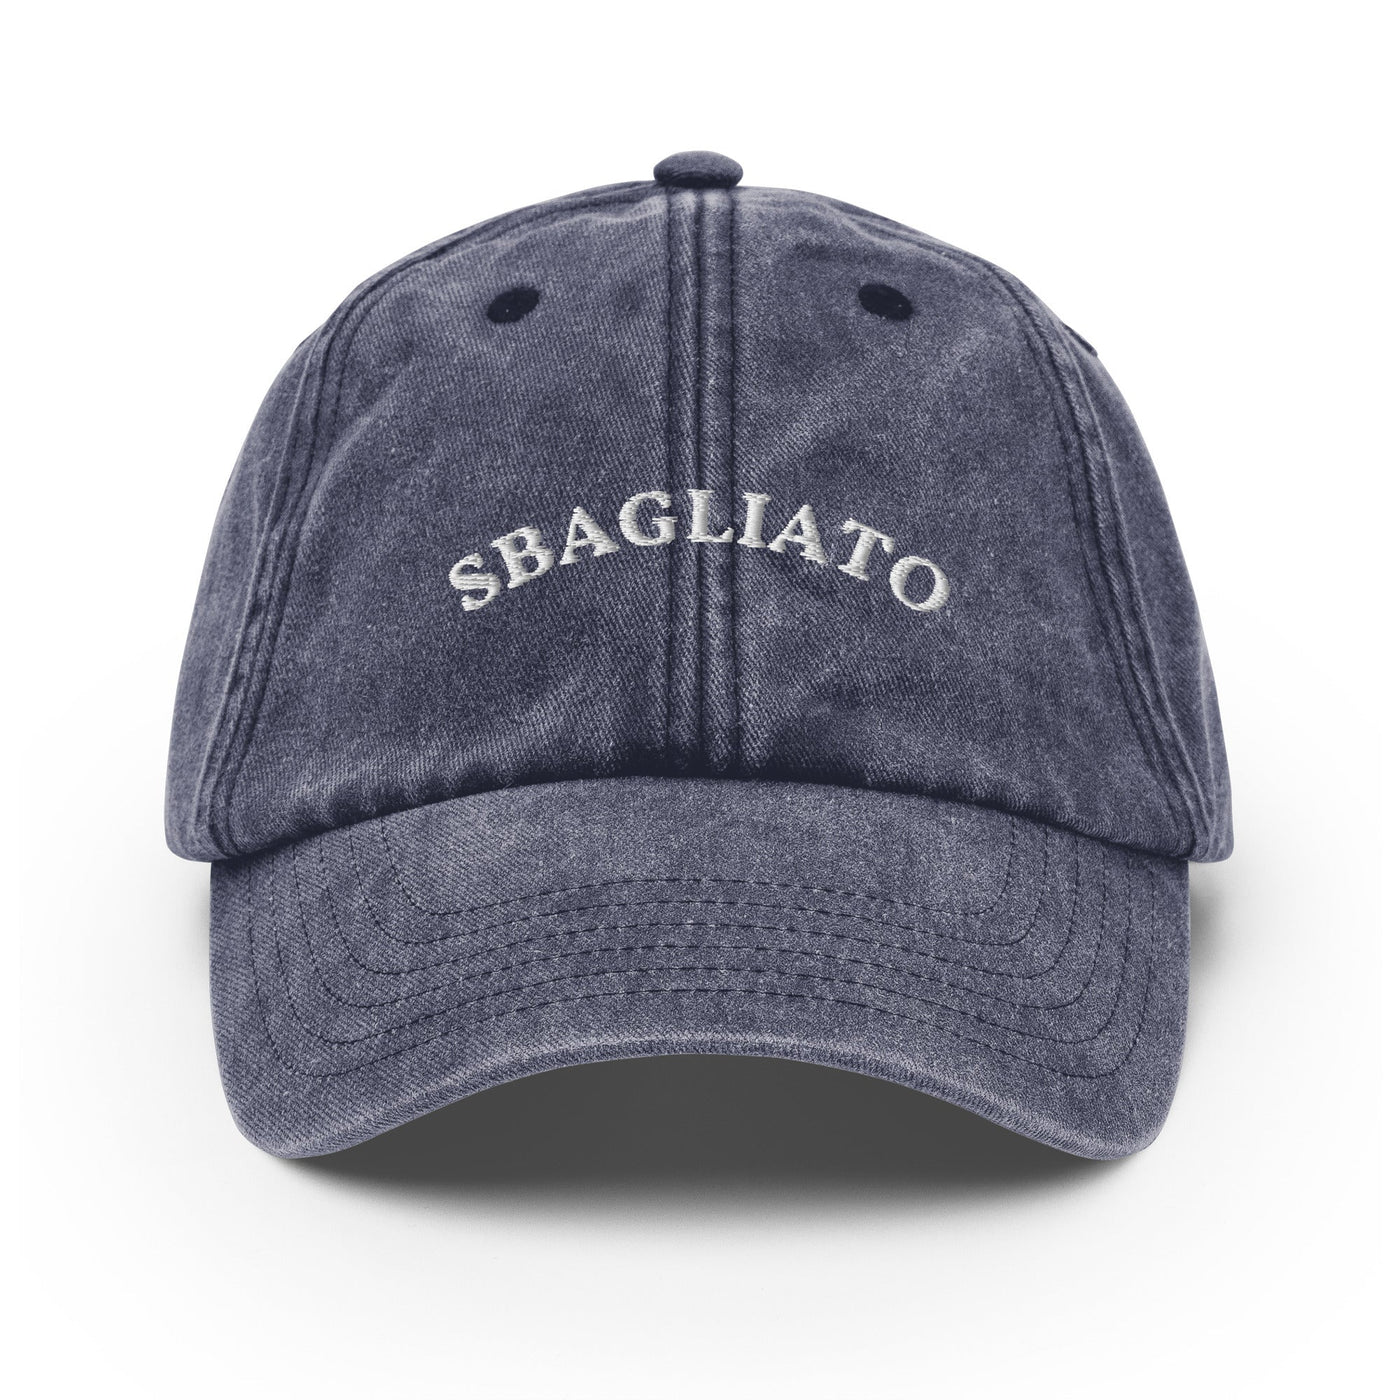 Sbagliato - Embroidered Vintage Cap